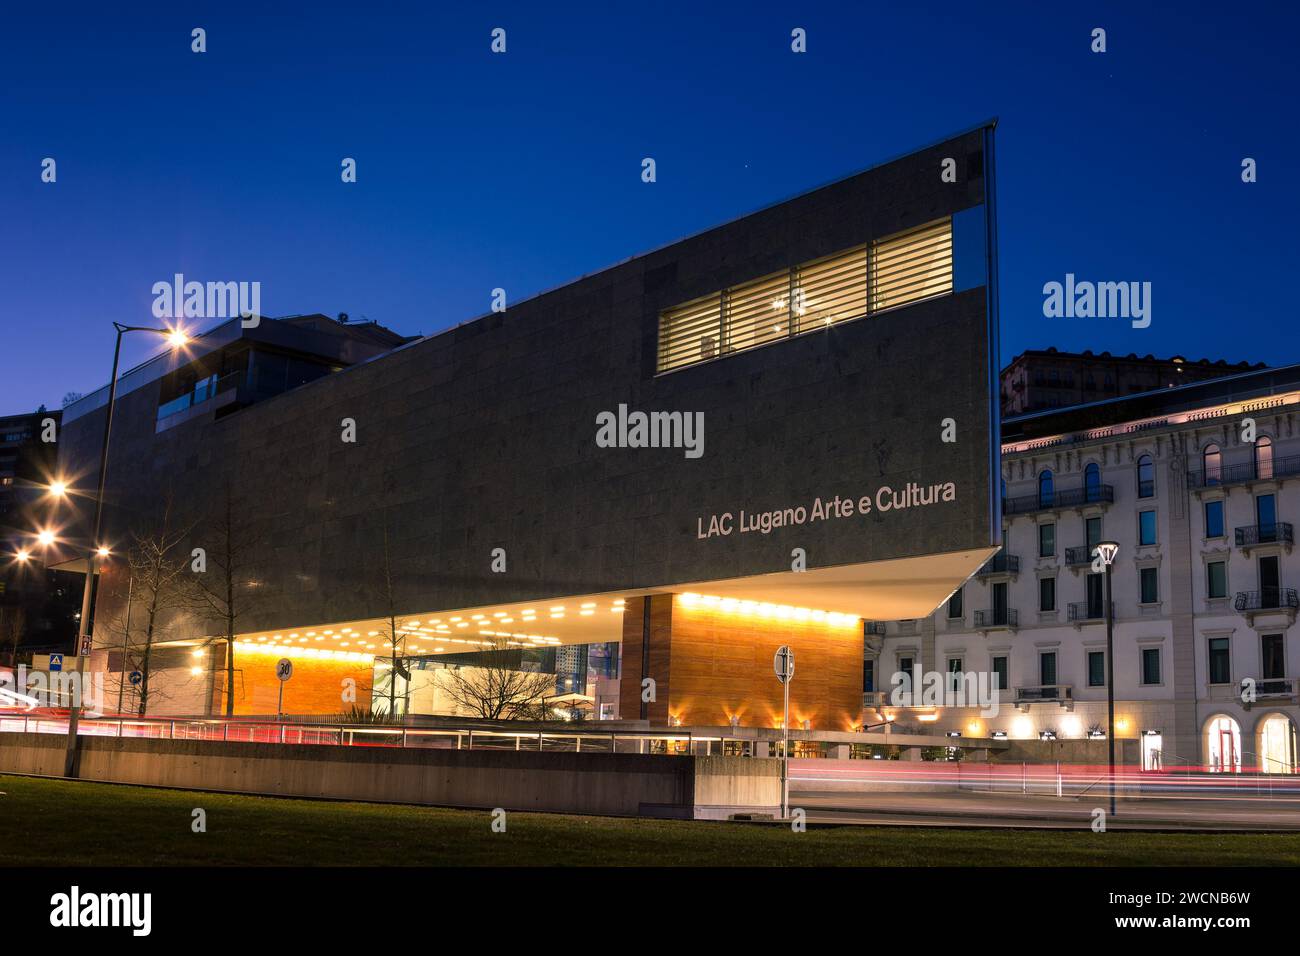 Lugano, Svizzera - 14 gennaio. 2022: Esterno dell'architettura moderna del centro culturale LAC (Lugano Arte e Cultura) all'ora blu Foto Stock